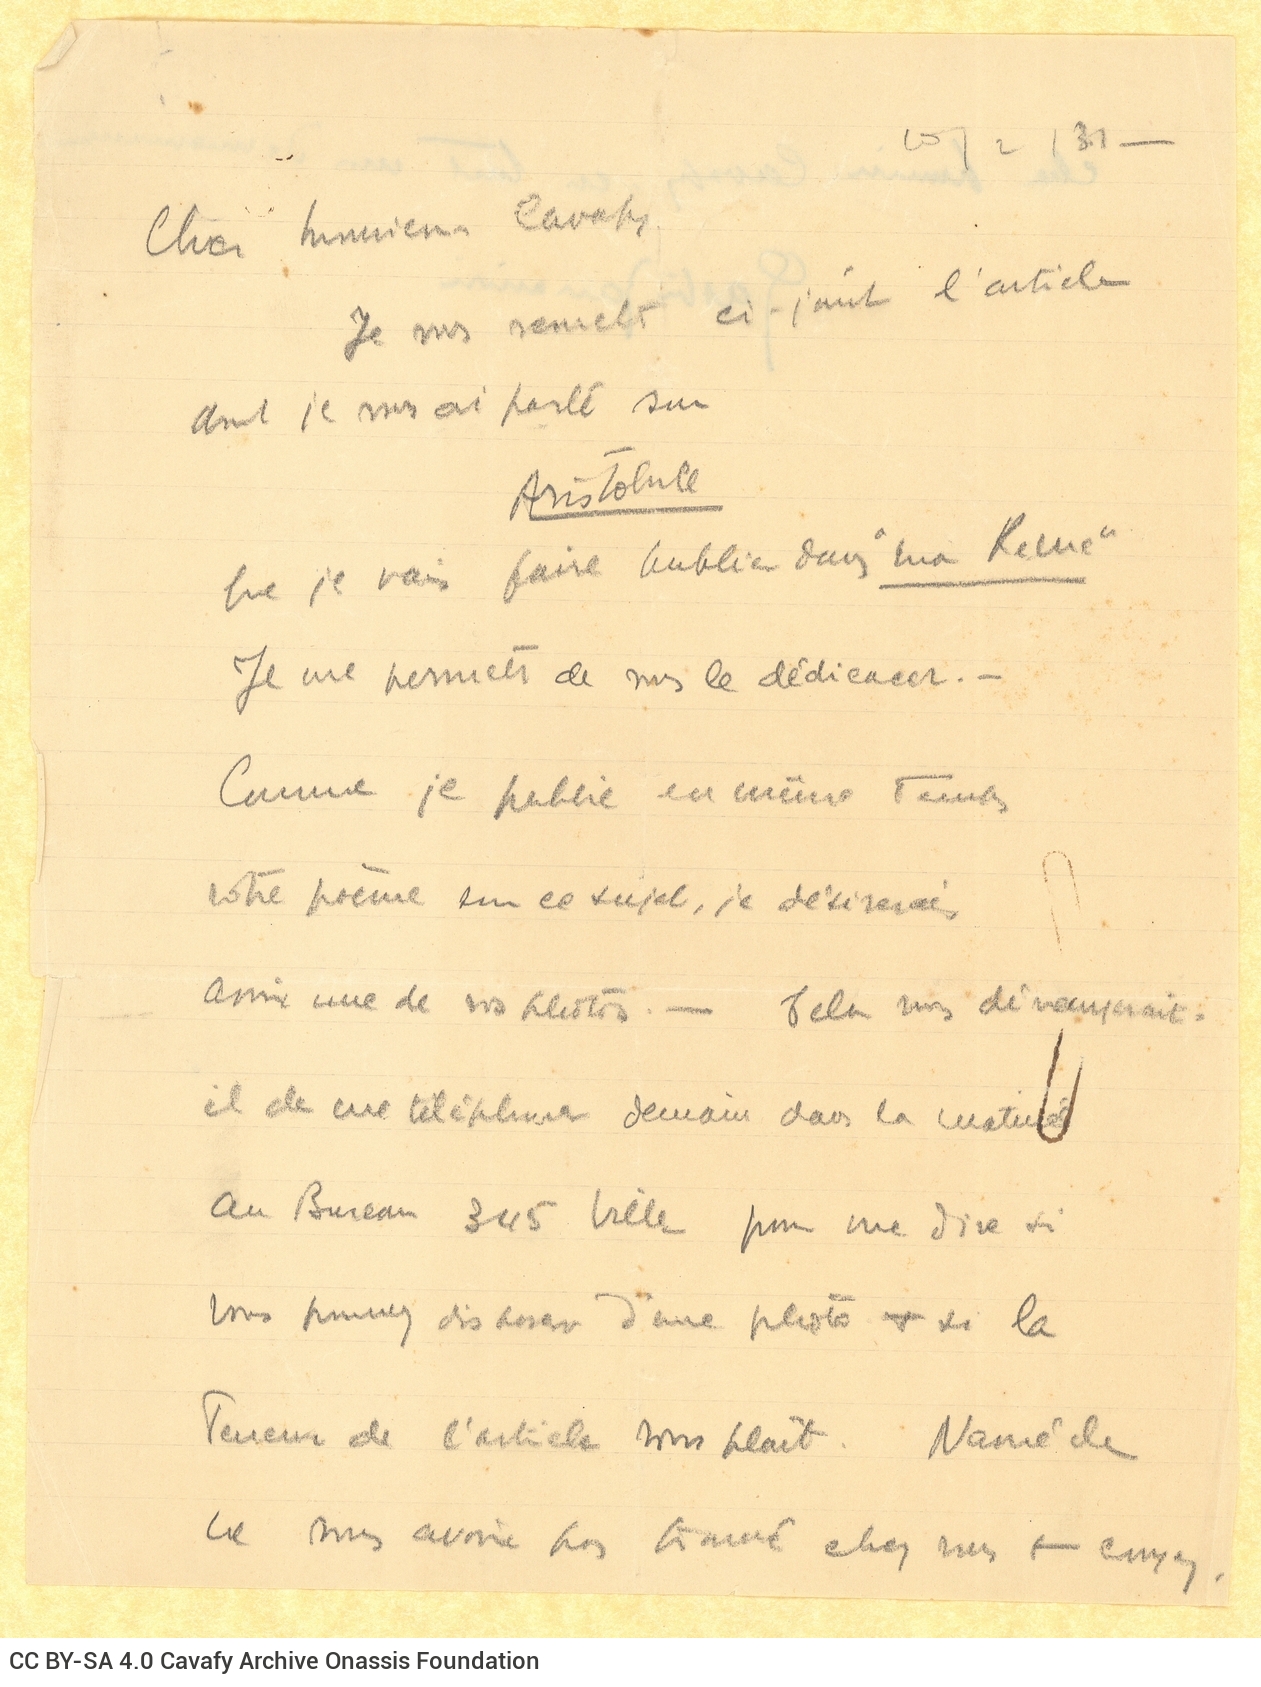 Αντίγραφο επιστολής του Γκαστόν Ζανανίρι (Gaston Zananiri) προς τον Καβάφη �